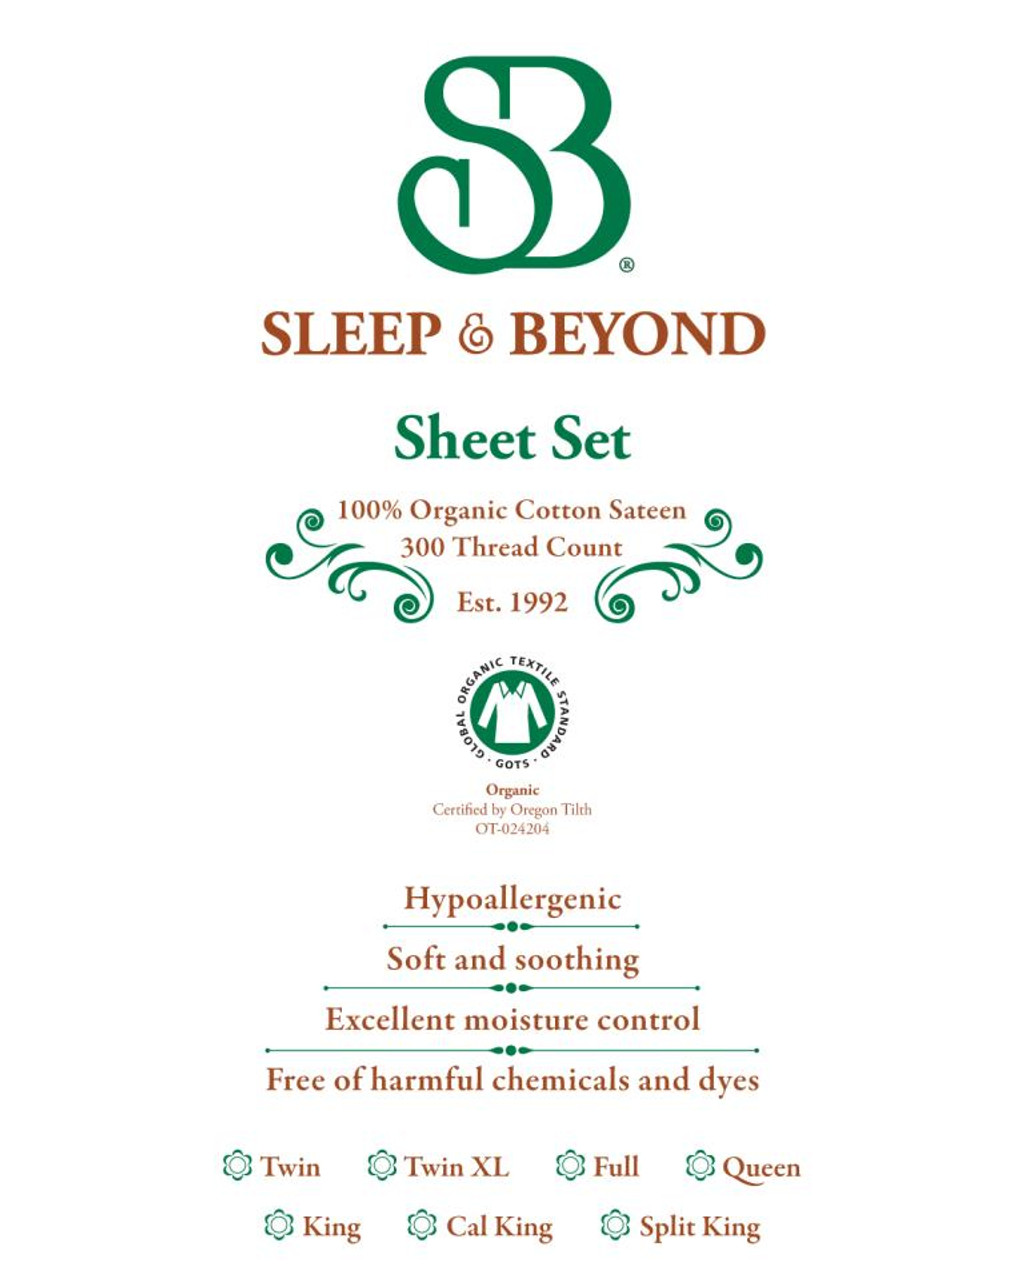 Sleep & Beyond 100% Organic Cotton Sheet Set Label